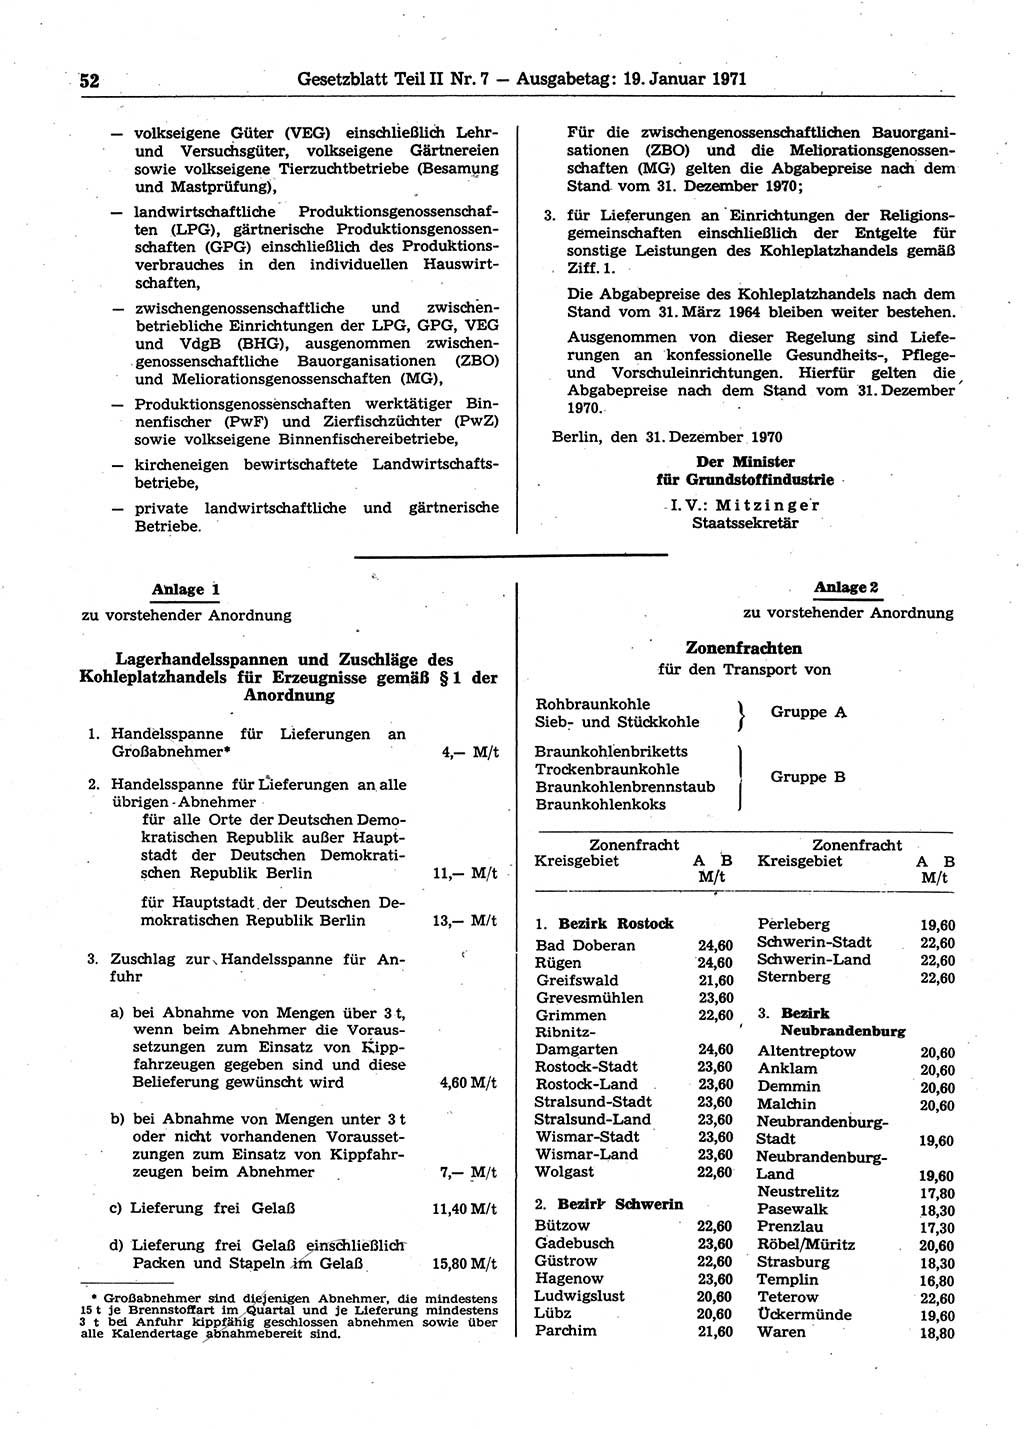 Gesetzblatt (GBl.) der Deutschen Demokratischen Republik (DDR) Teil ⅠⅠ 1971, Seite 52 (GBl. DDR ⅠⅠ 1971, S. 52)